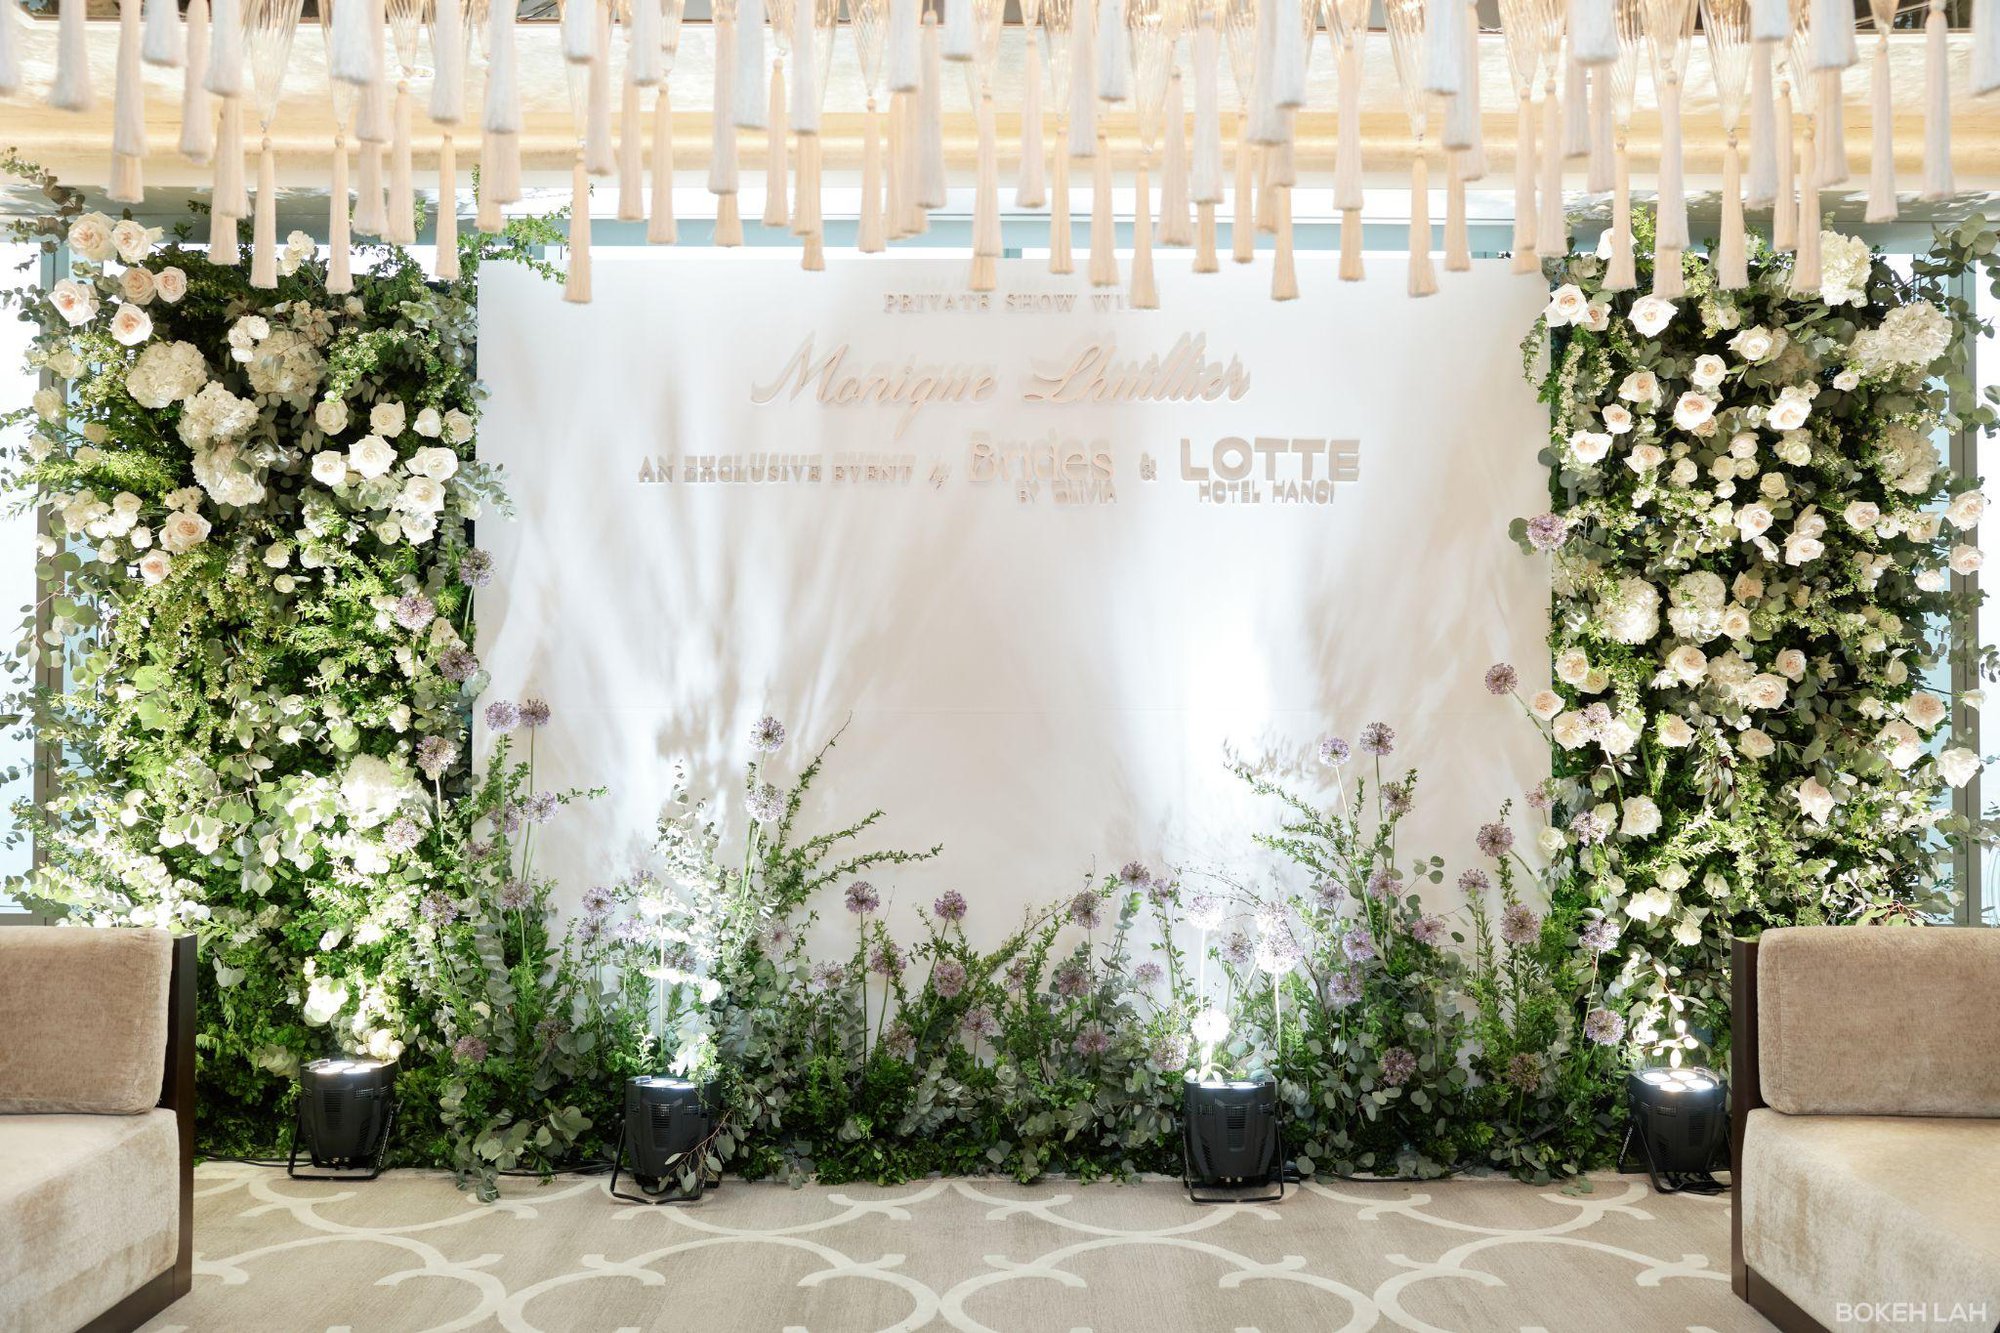 Thương hiệu cưới Monique Lhuillier ra mắt tại khách sạn Lotte Hanoi - Ảnh 1.